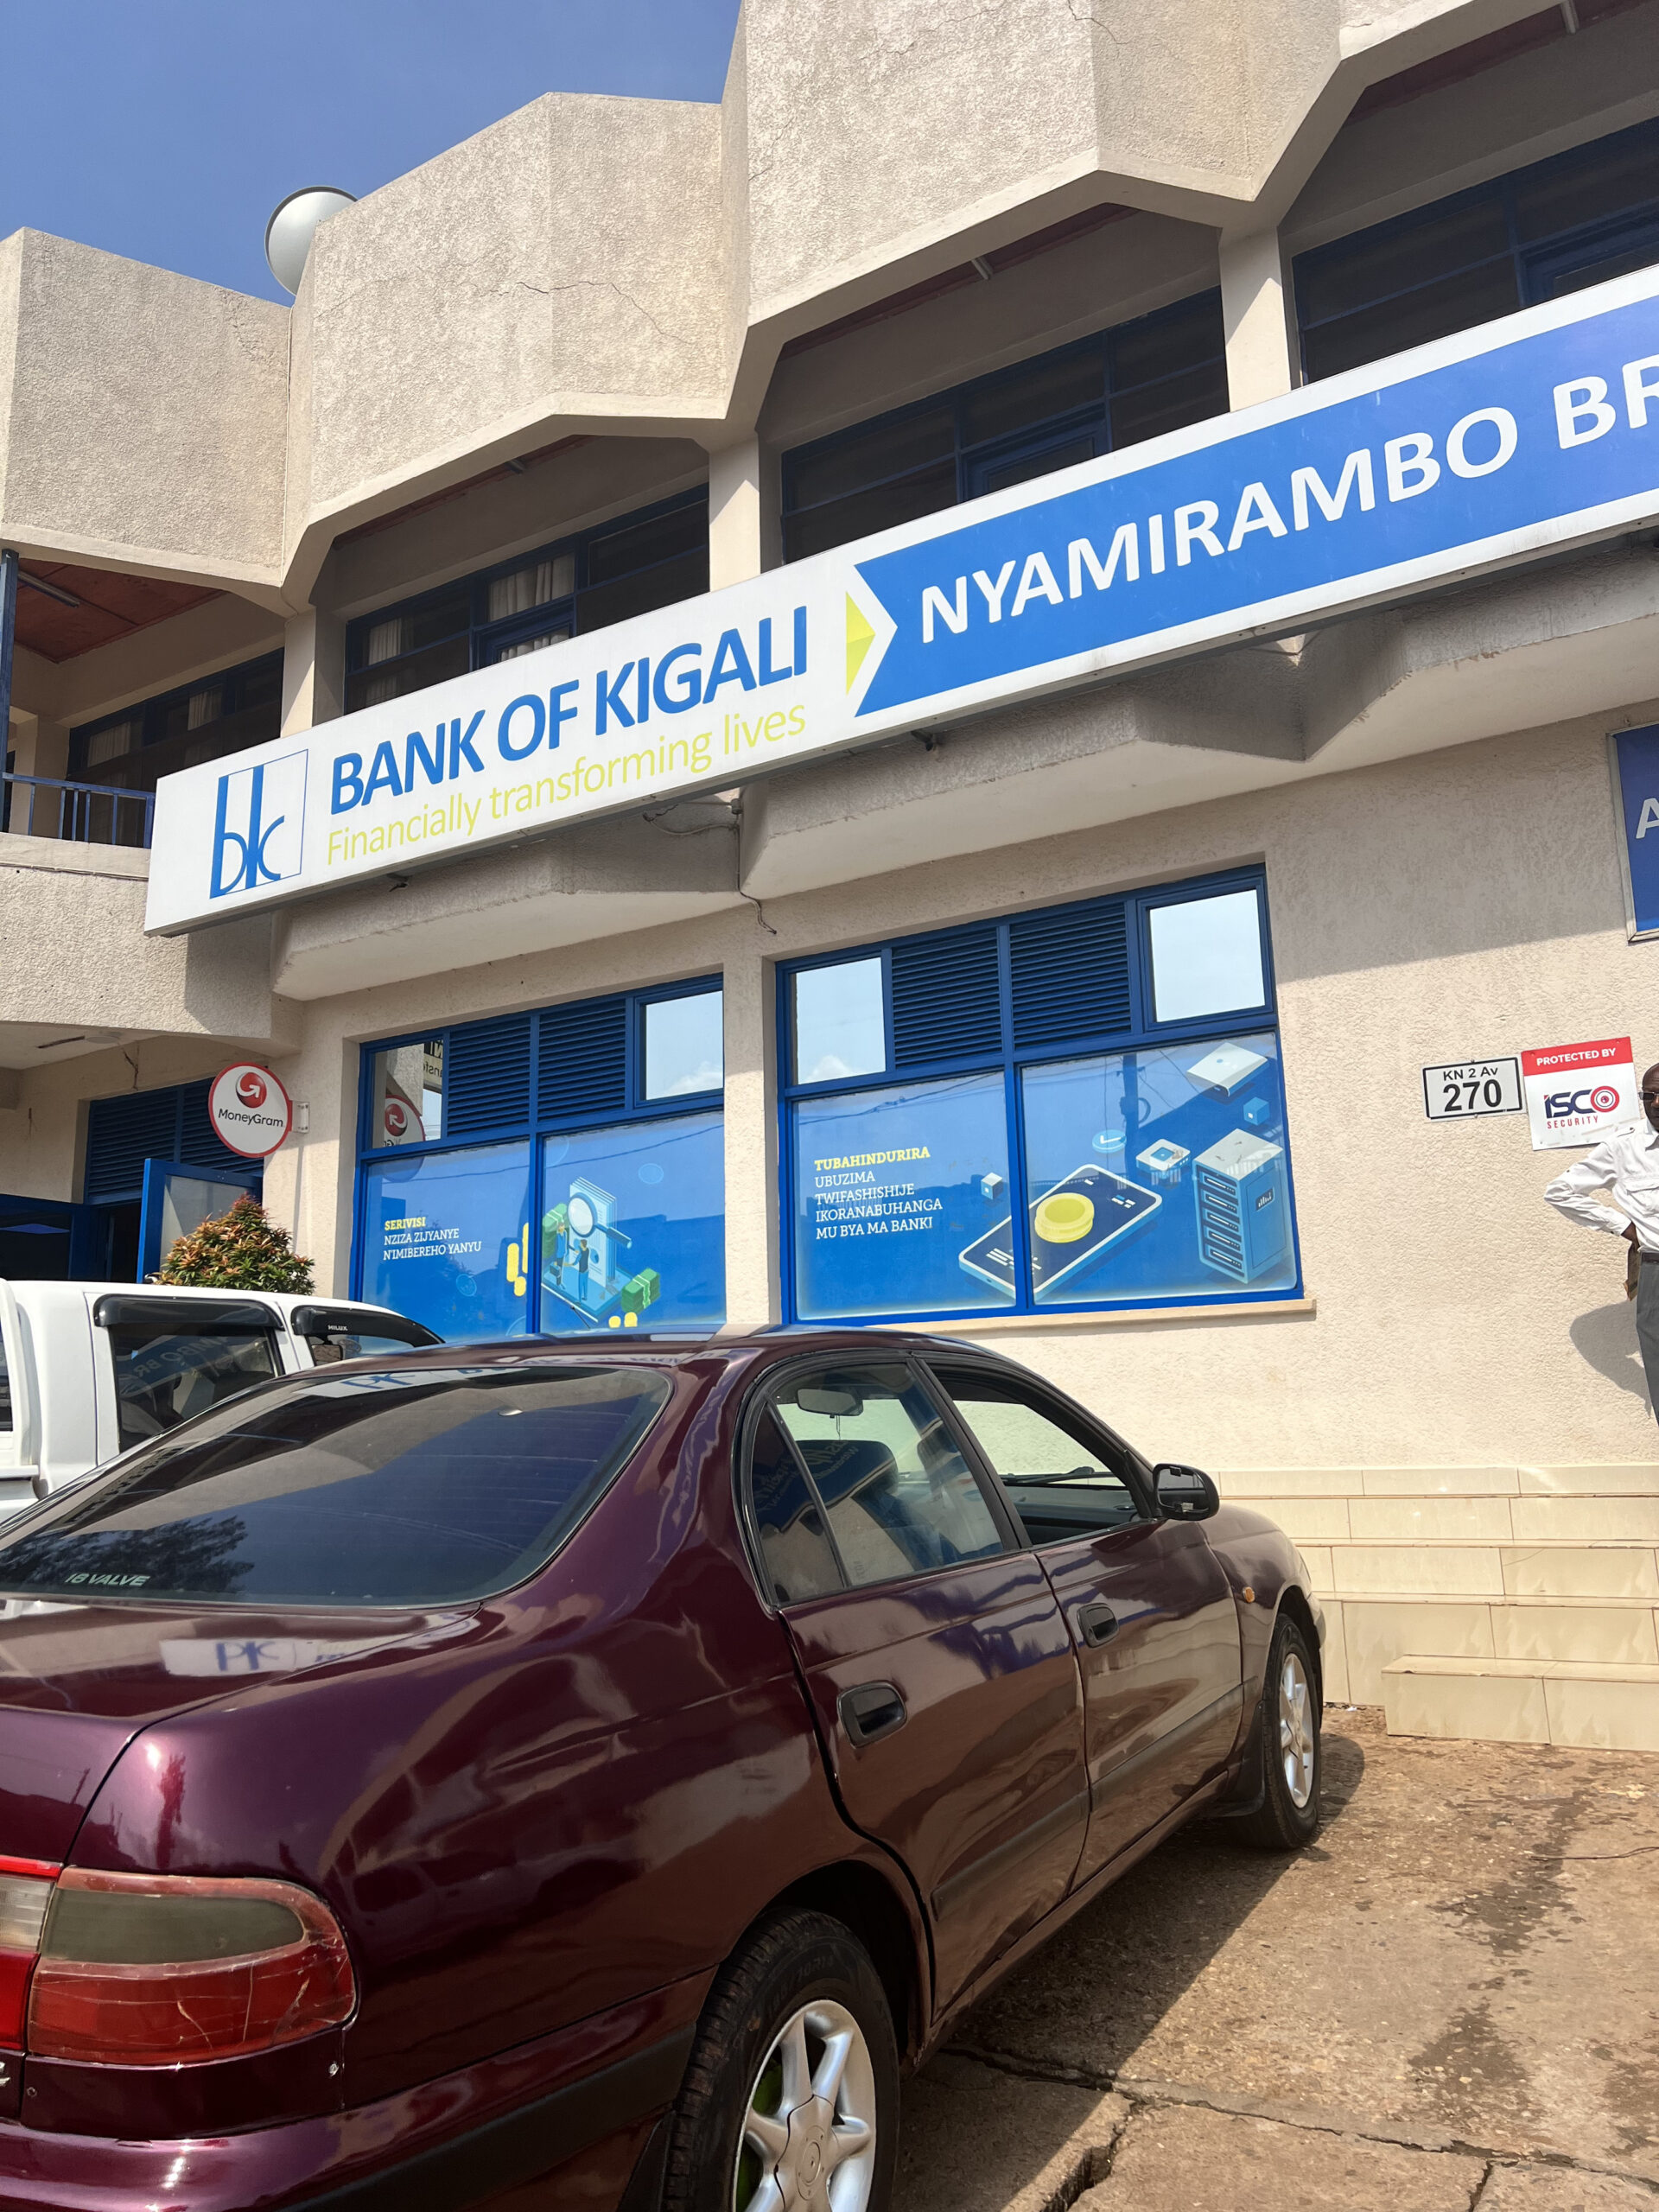 Bank of Kigali ATM